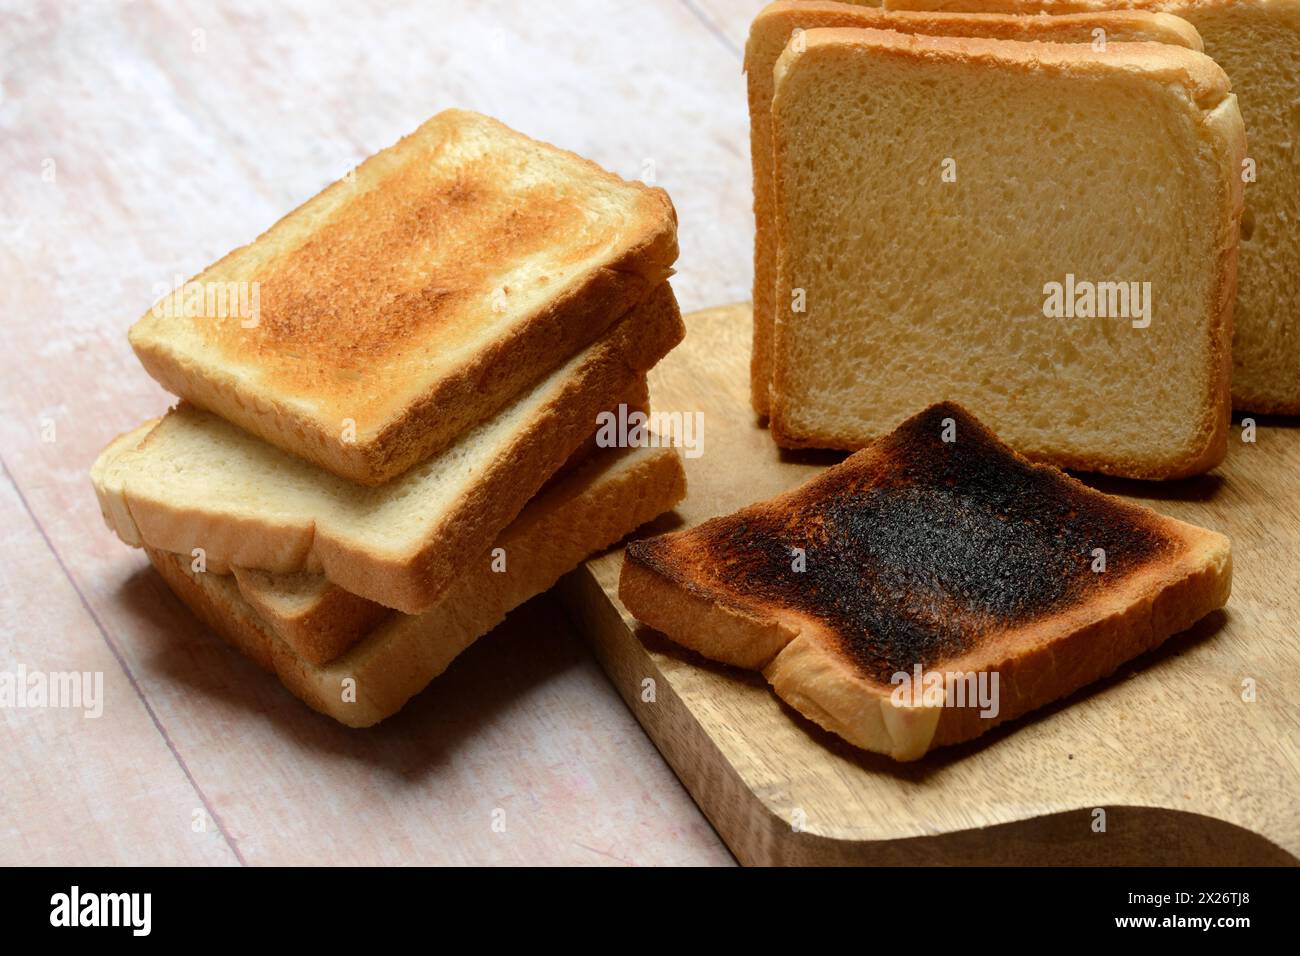 Tranche de pain grillé brûlée avec pain grillé, pain grillé Banque D'Images